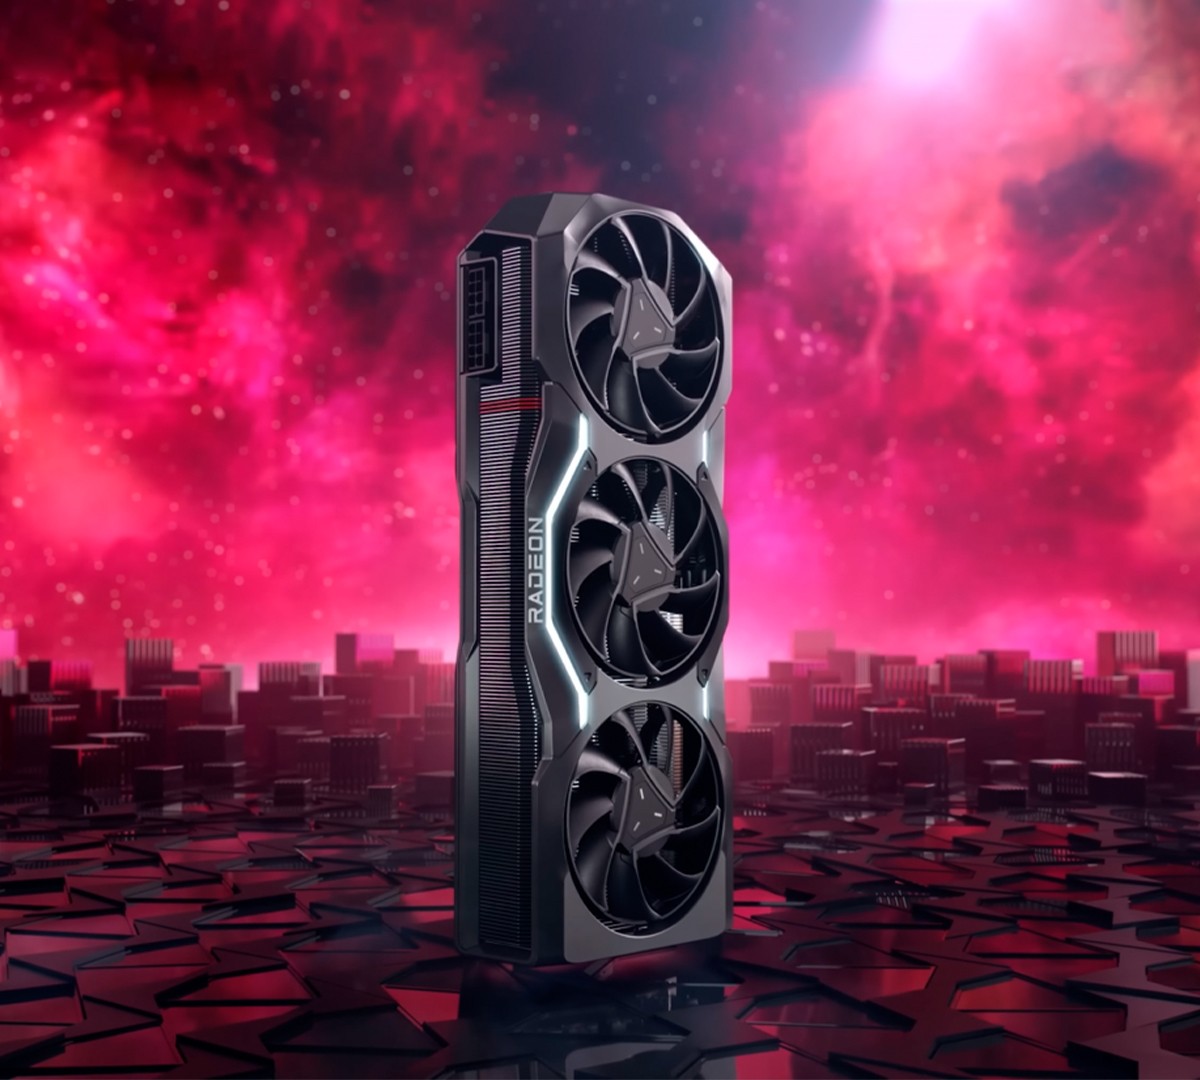 OFICIAL! NVIDIA anuncia GPUs RTX 4090 e 4080 com preços a partir de US$ 899